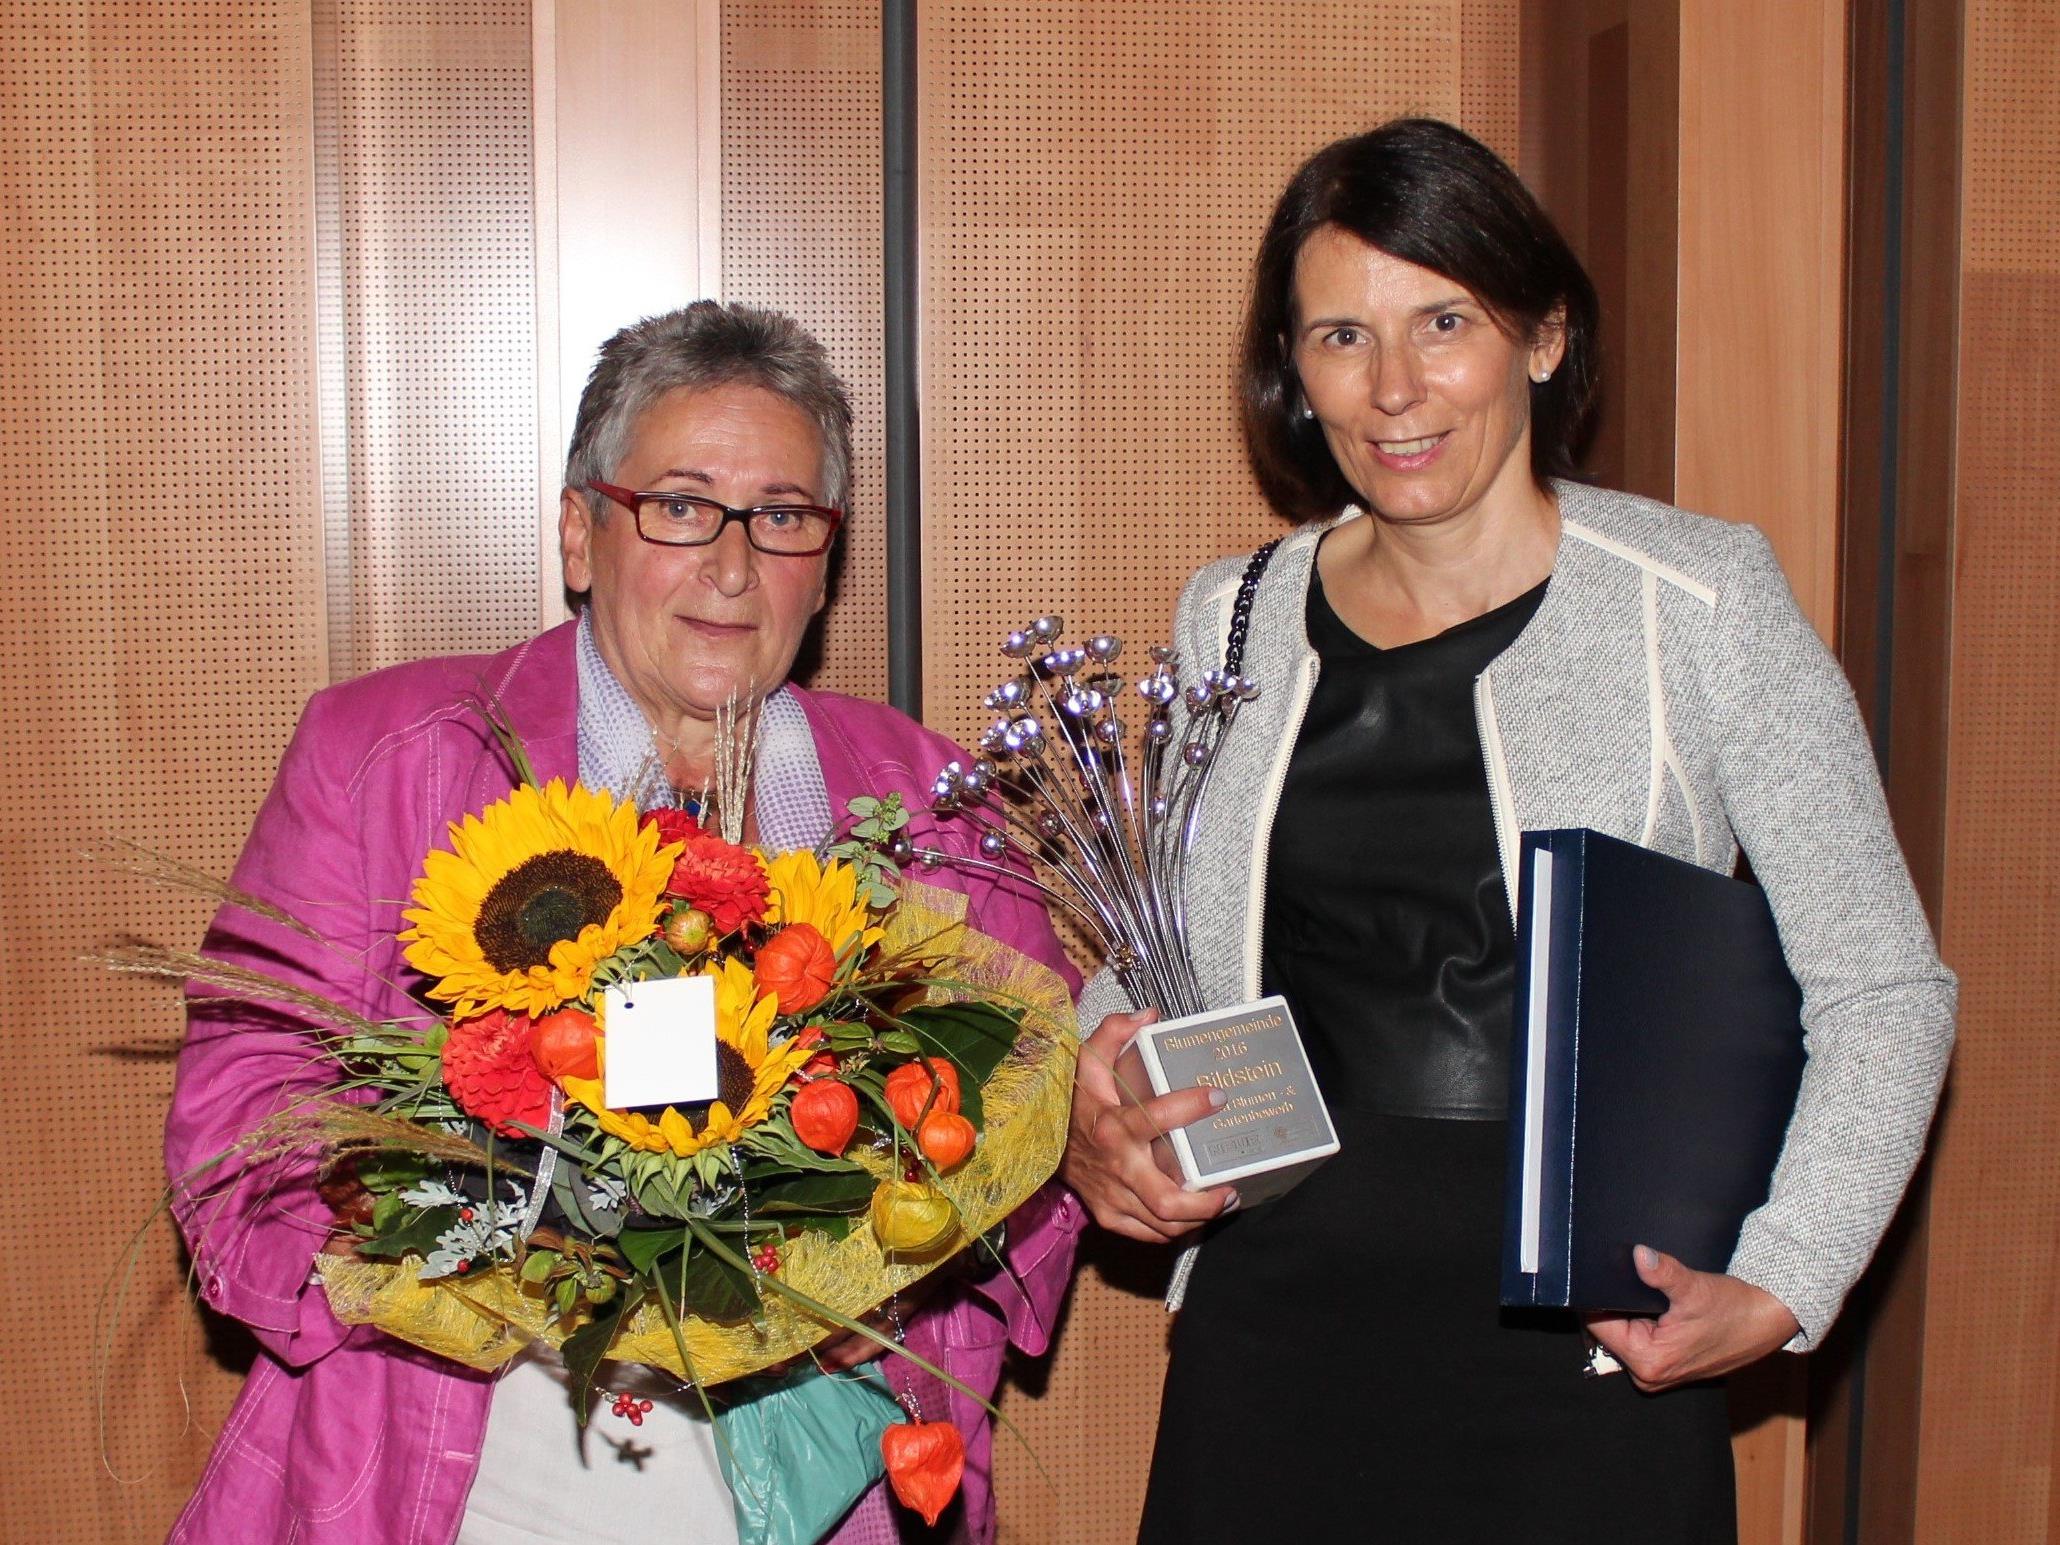 Elfriede Maurer und Bgm. Judith Schilling-Grabher freuen sich über die Auszeichnung.